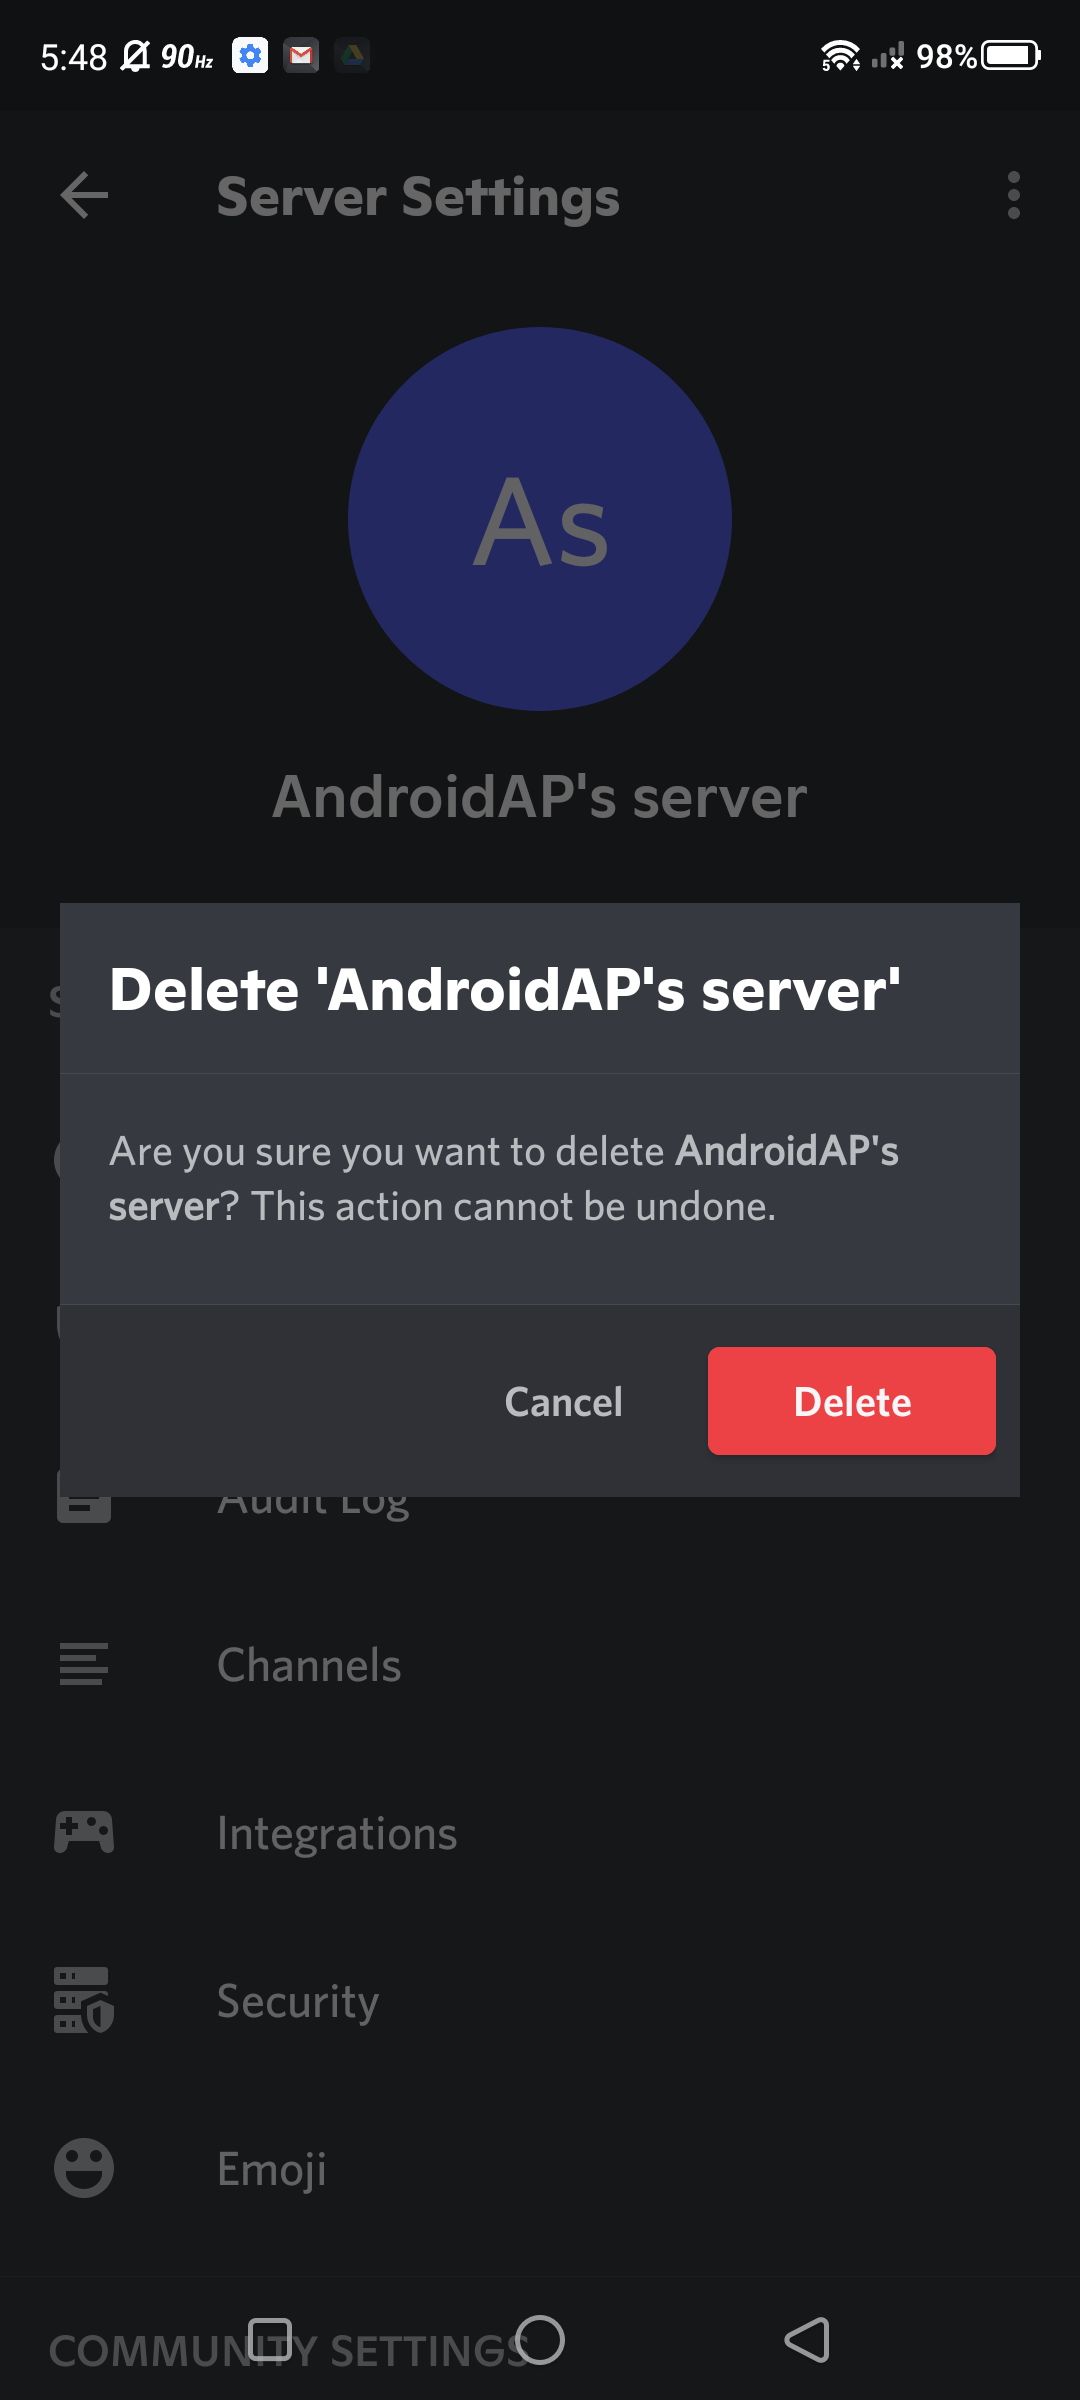 Captura de tela da confirmação da exclusão do servidor no aplicativo Discord para Android